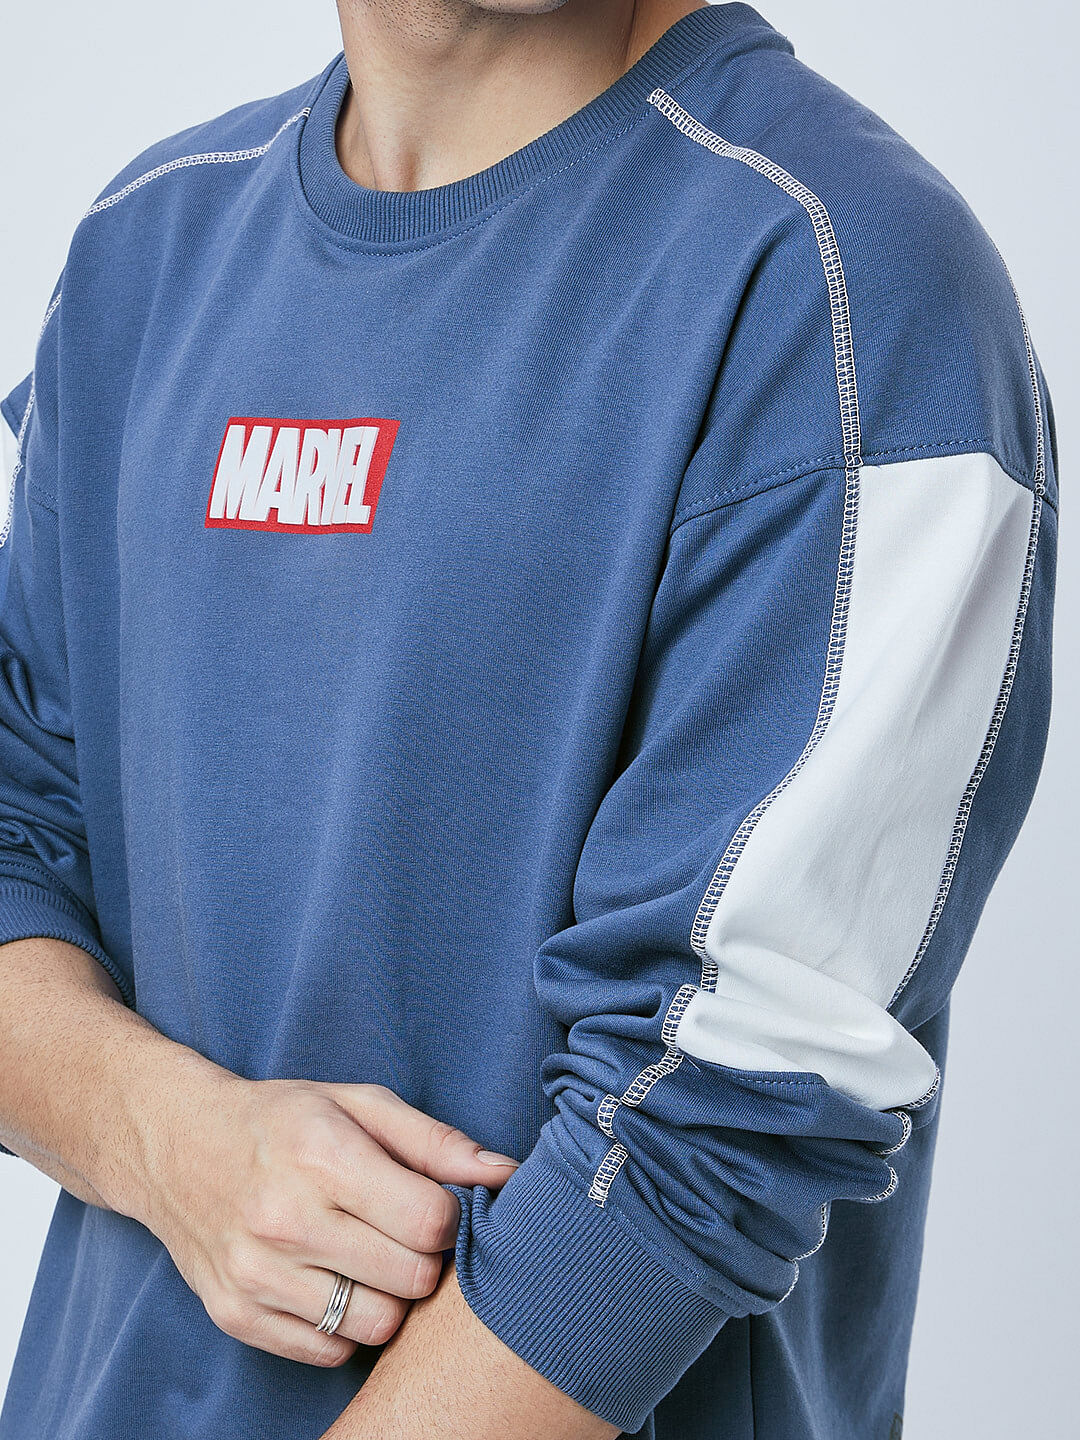 Visiter la boutique MarvelMarvel Spider-Man Queens Sign Web Swing Men's Sweatshirt 